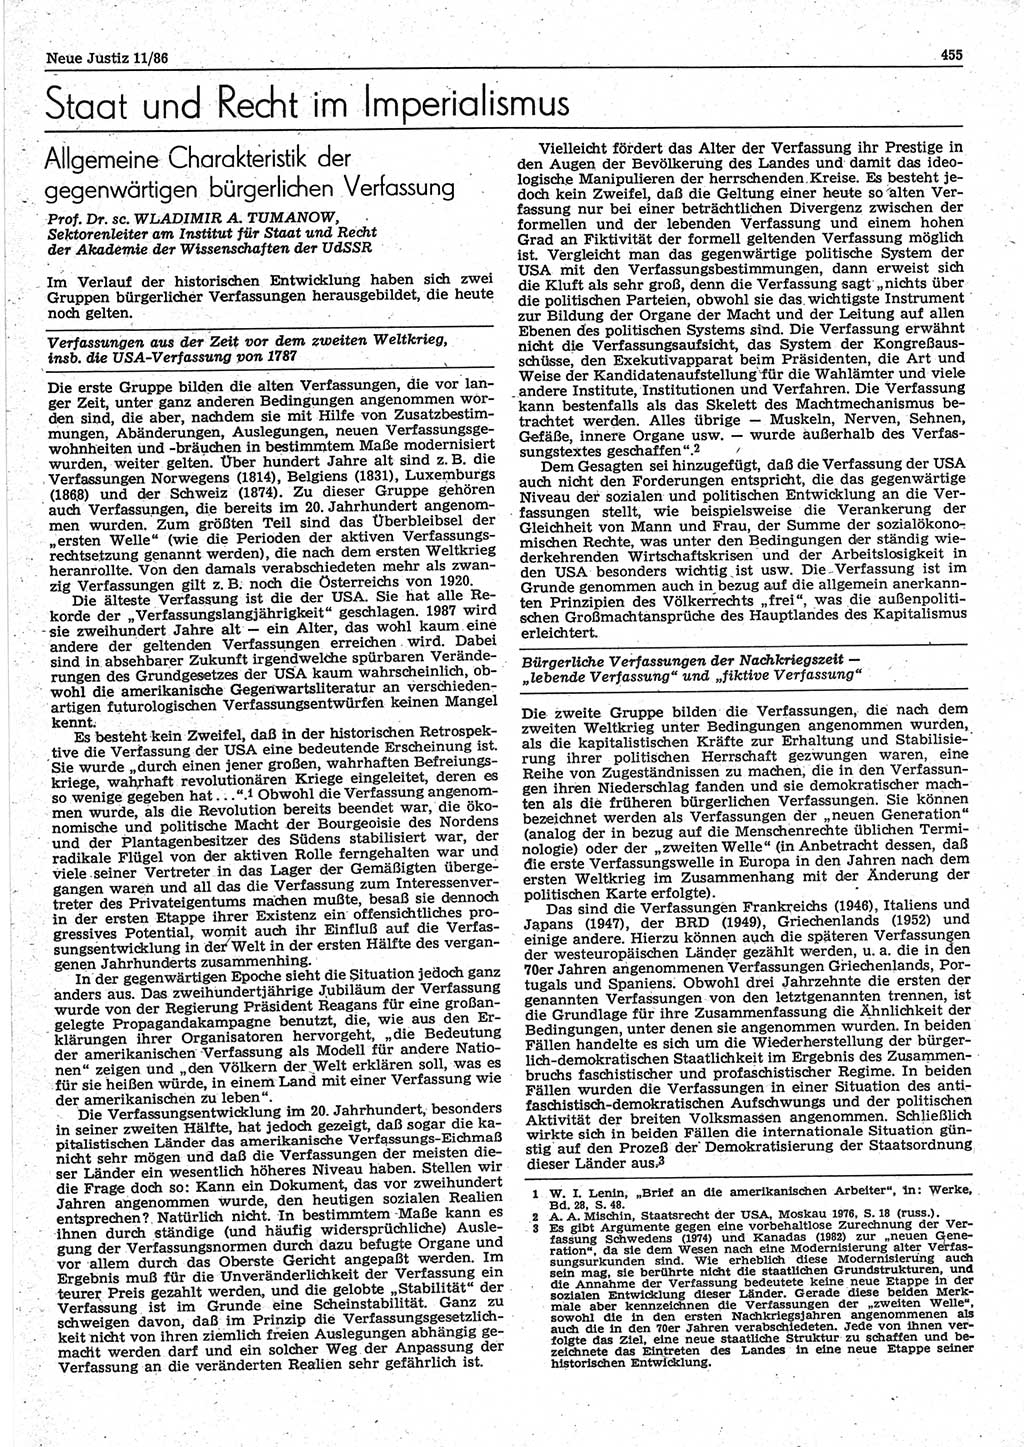 Neue Justiz (NJ), Zeitschrift für sozialistisches Recht und Gesetzlichkeit [Deutsche Demokratische Republik (DDR)], 40. Jahrgang 1986, Seite 455 (NJ DDR 1986, S. 455)